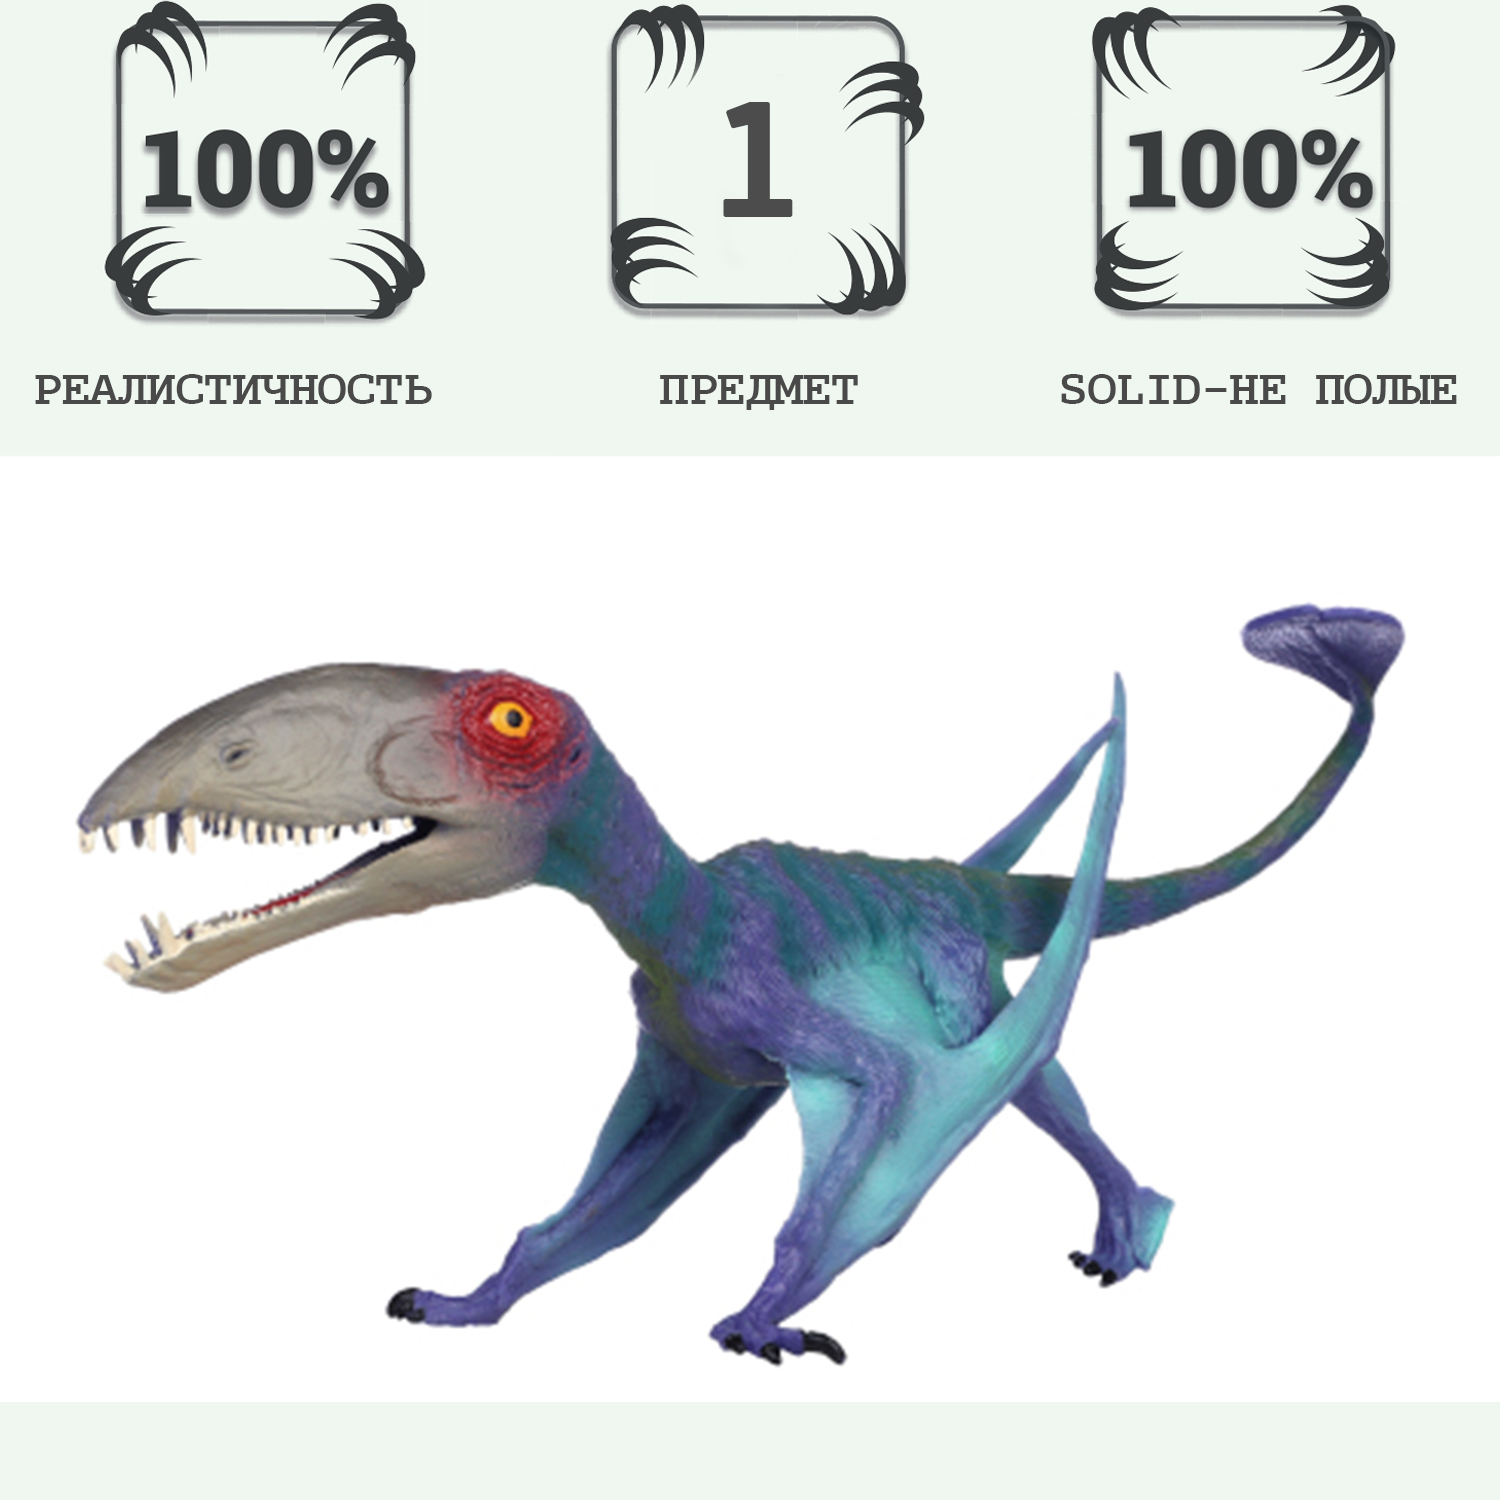 Игрушка динозавр серии Мир динозавров Masai Mara Птерозавр MM216-390